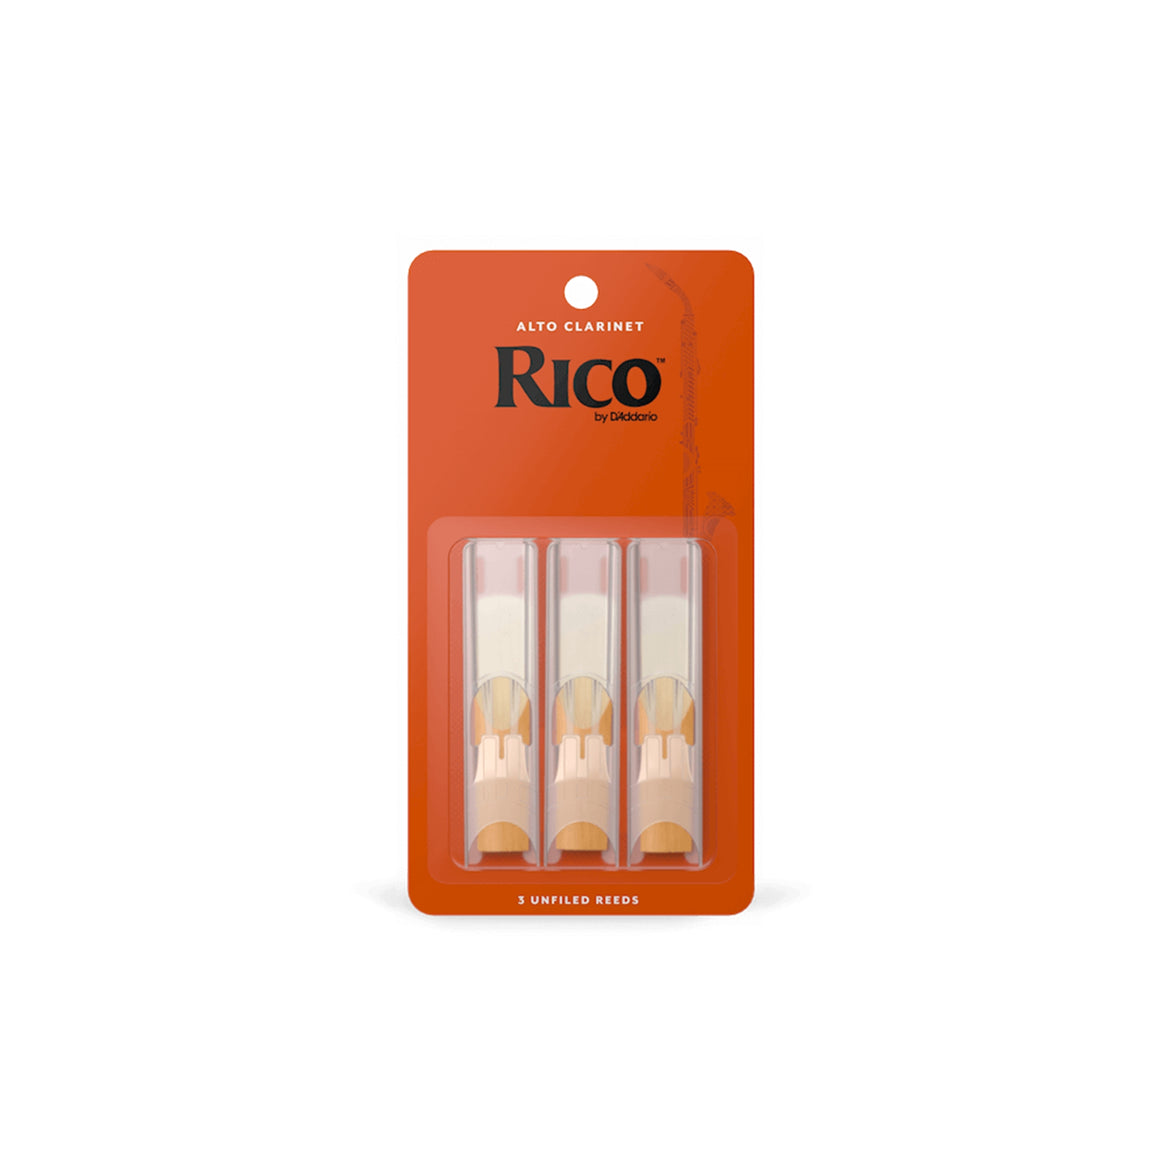 RICO RDA0325 #2.5 Alto Clarinet Reeds, 3 Pack